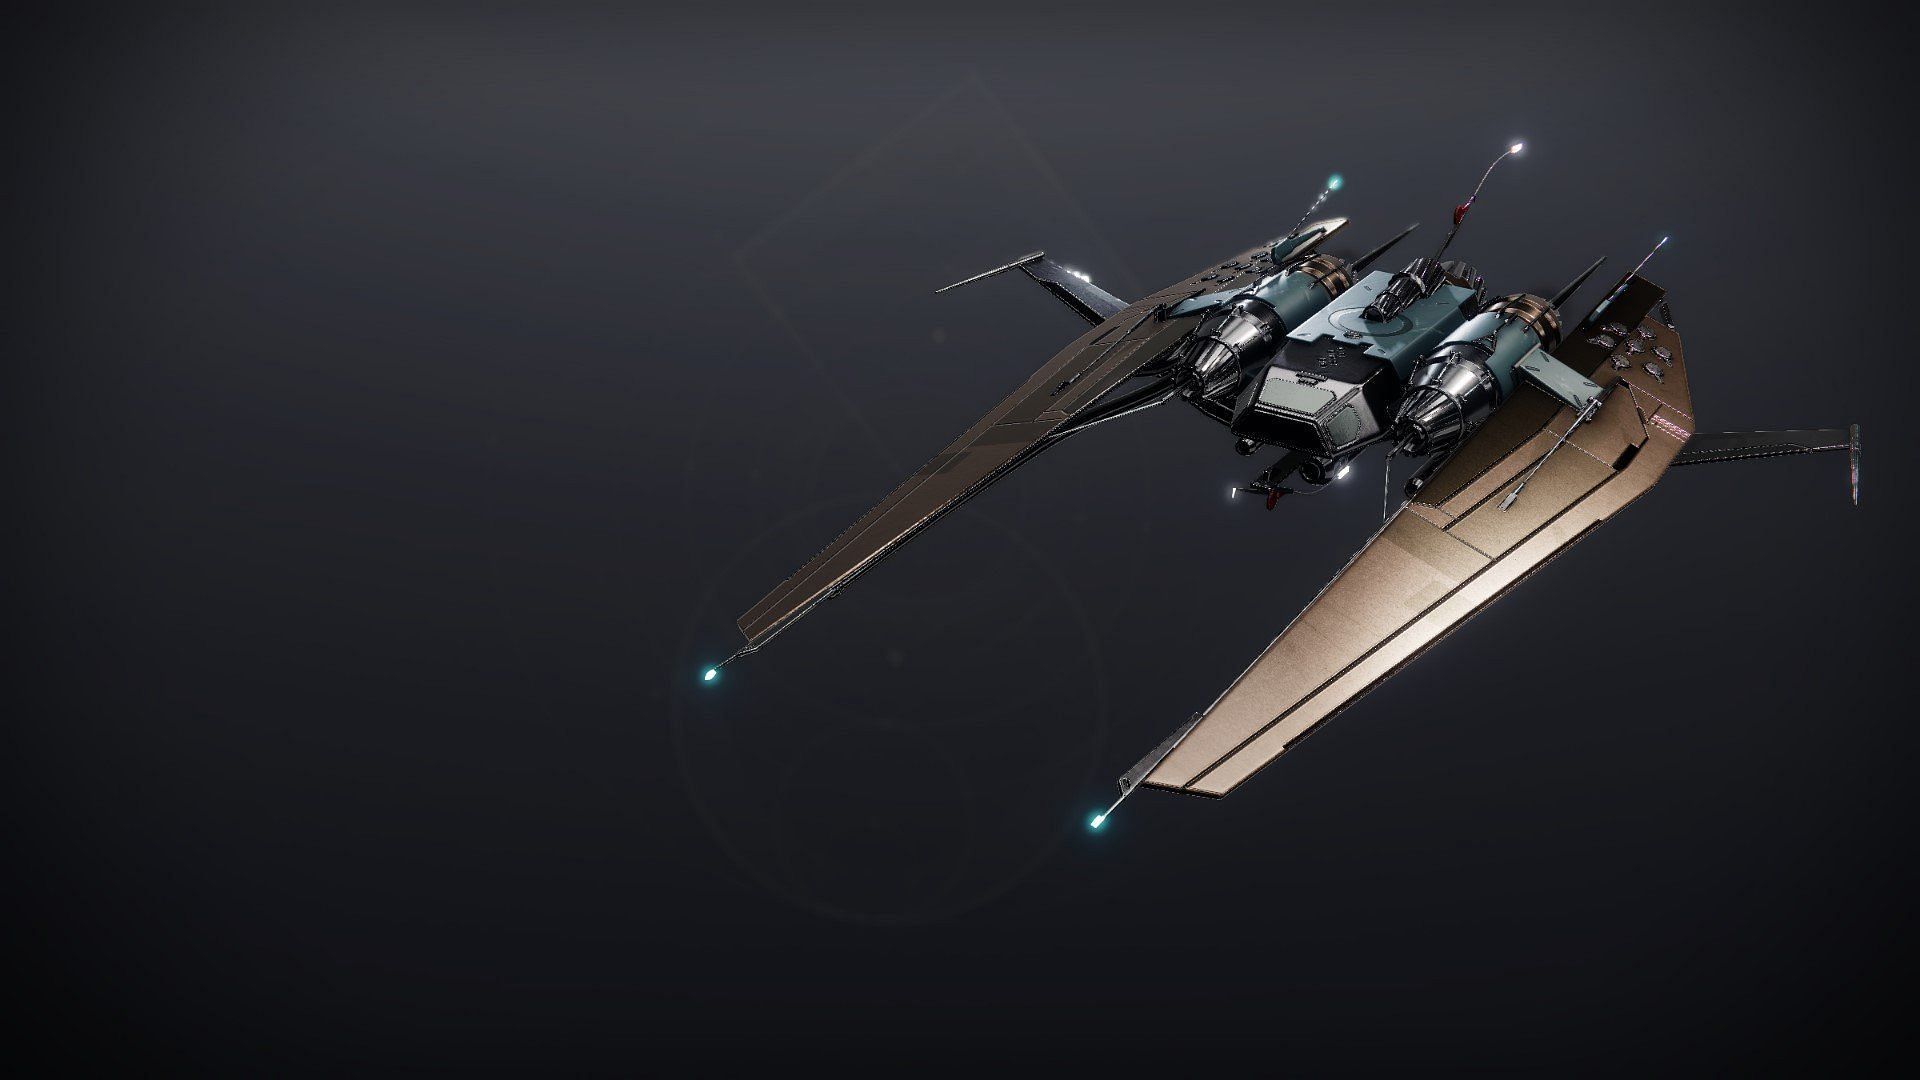 Stardevil Predator Exotic ship (Image via Destiny 2)